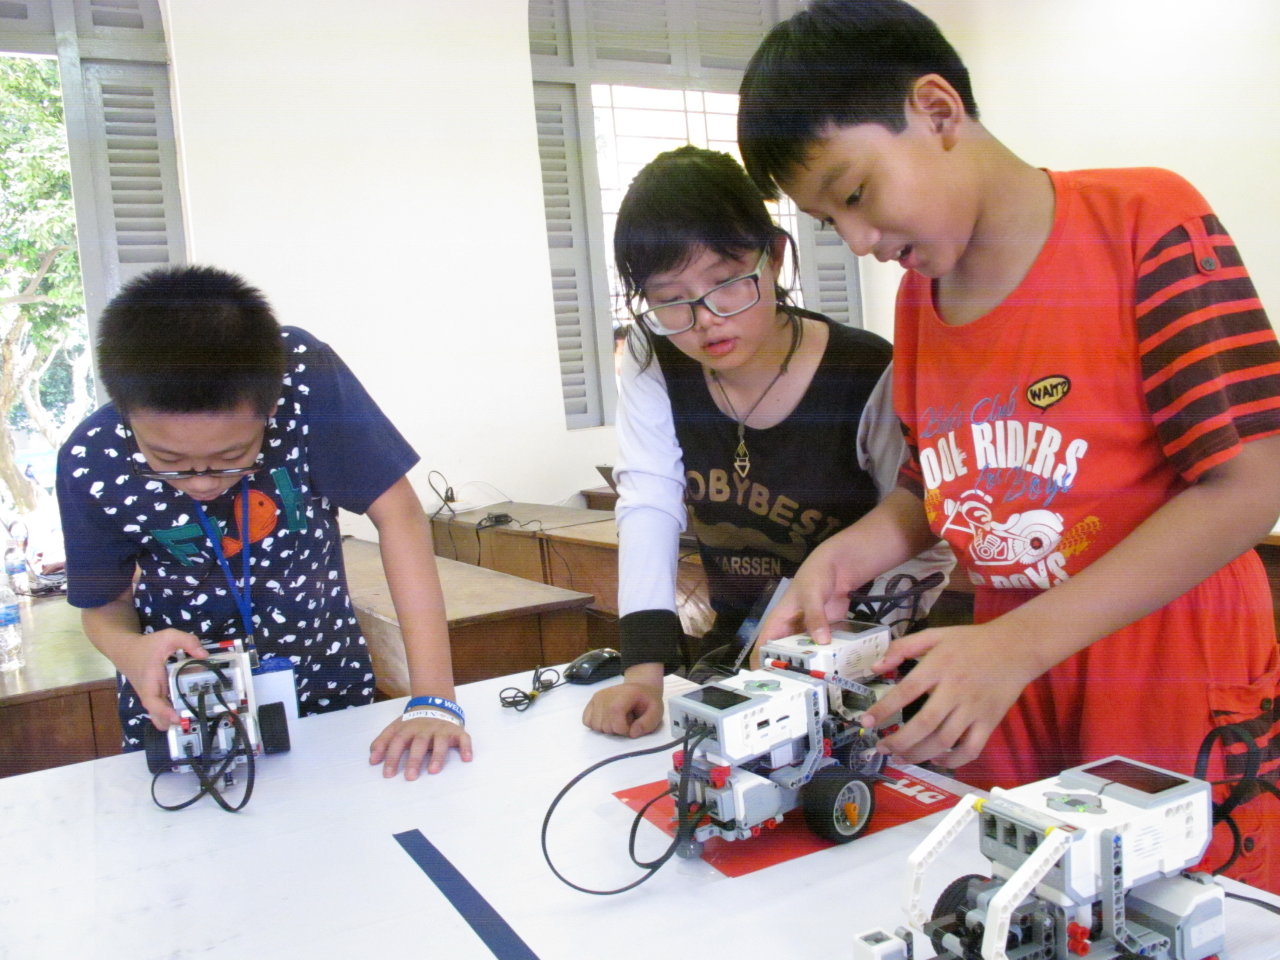 Các bạn nhỏ thích thú với bài học lập trình điều khiển robot tại ngày hội STEM - Ảnh: K.Anh